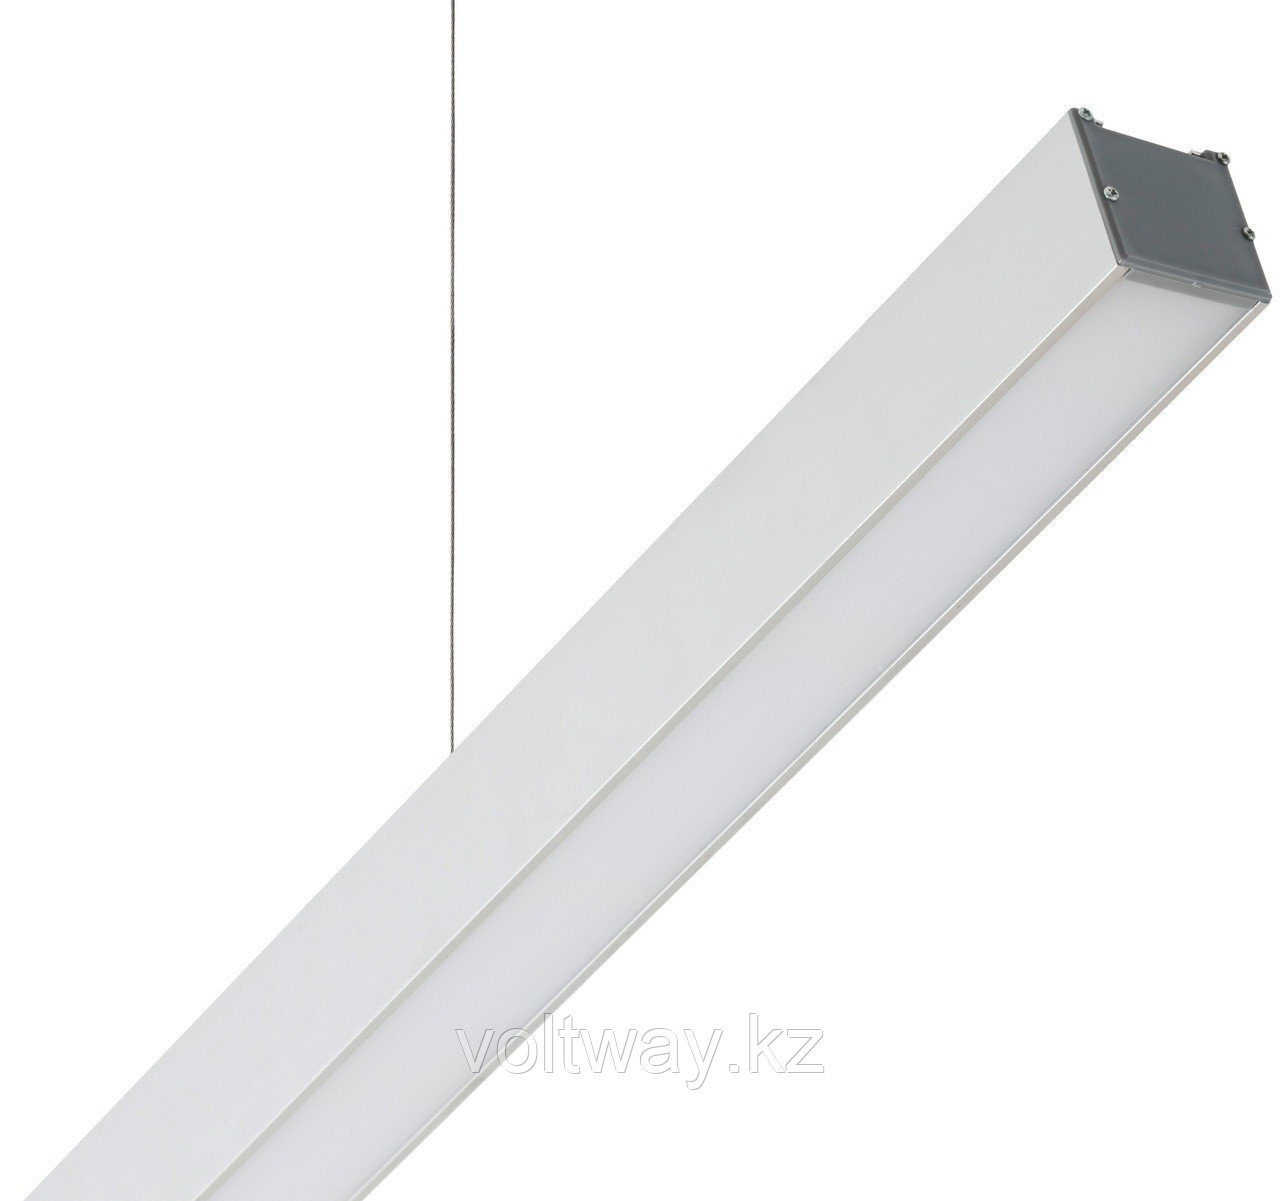 Линейный светильник на тросах, белый корпус, 4000к (нейтральный), 1.2 м, 84 вт